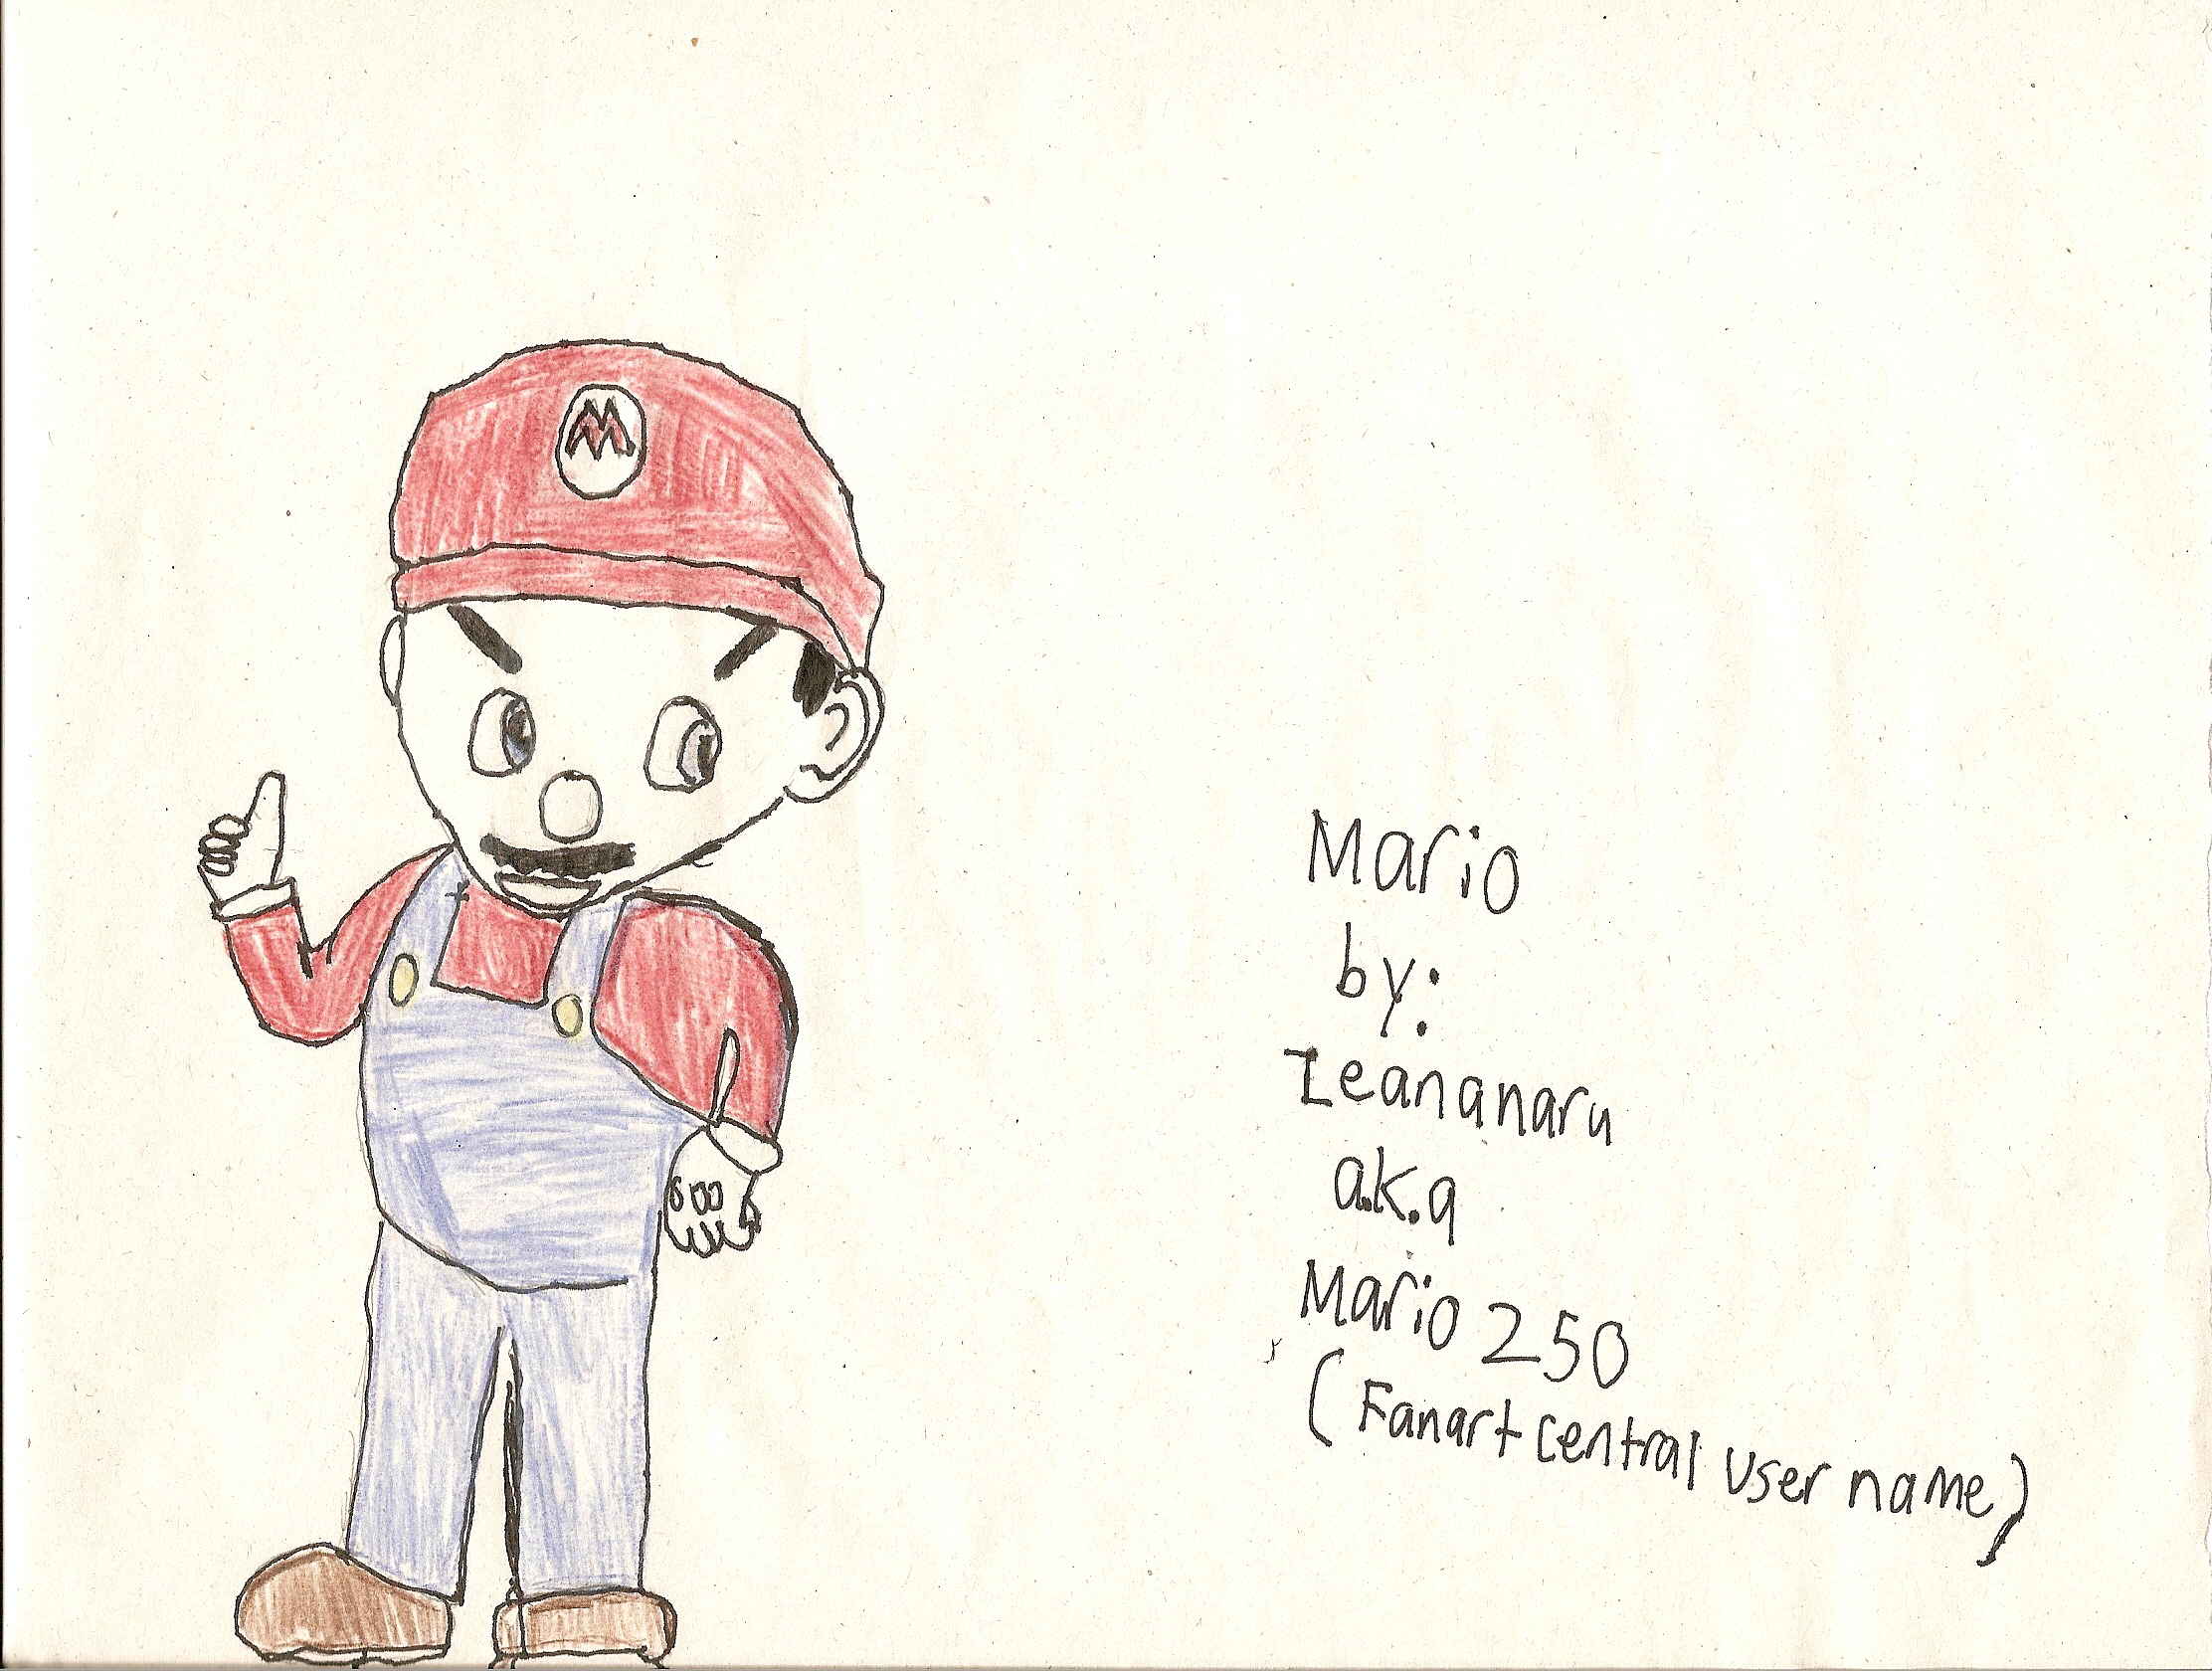 Mario by Mario250